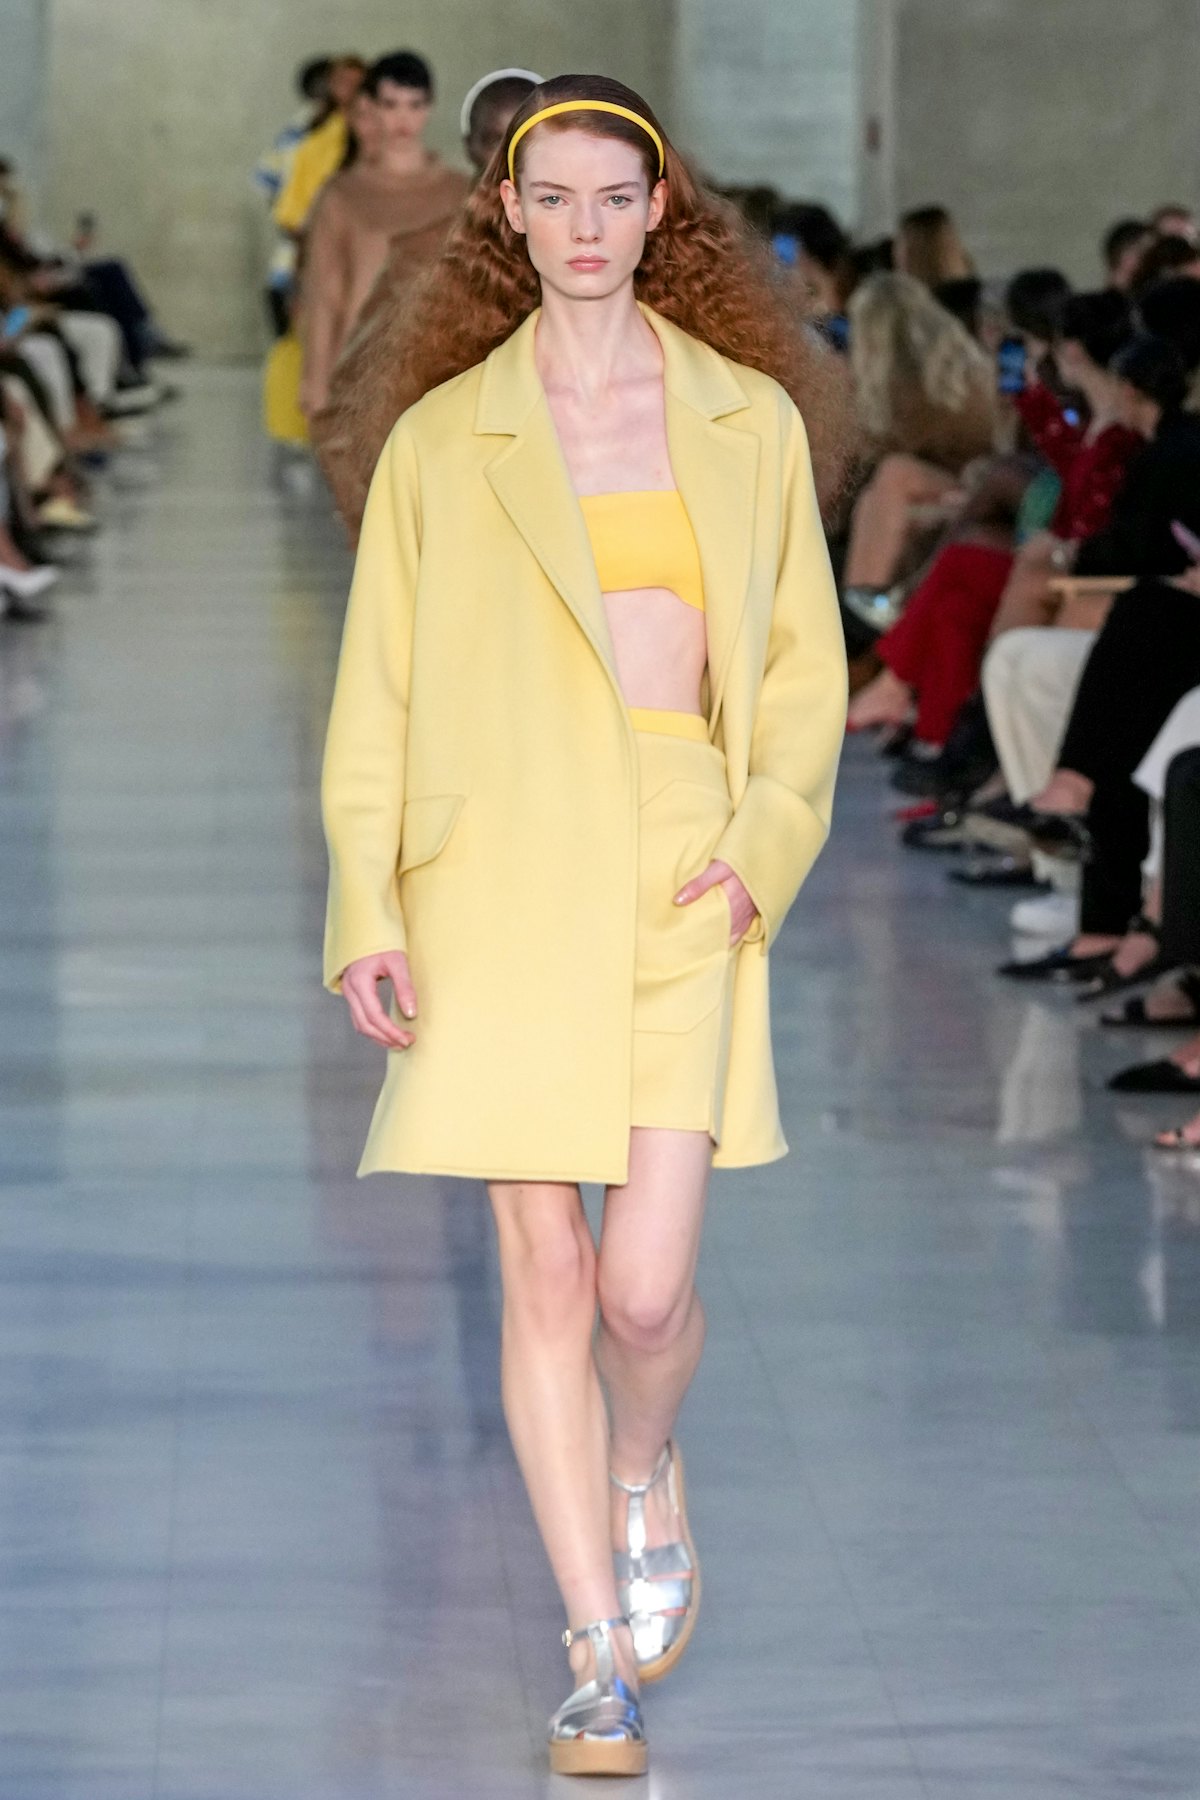 MILAN, ITALY - SEPTEMBER 23: A model walks the runway at the Max Mara fashion show during the Milan ...